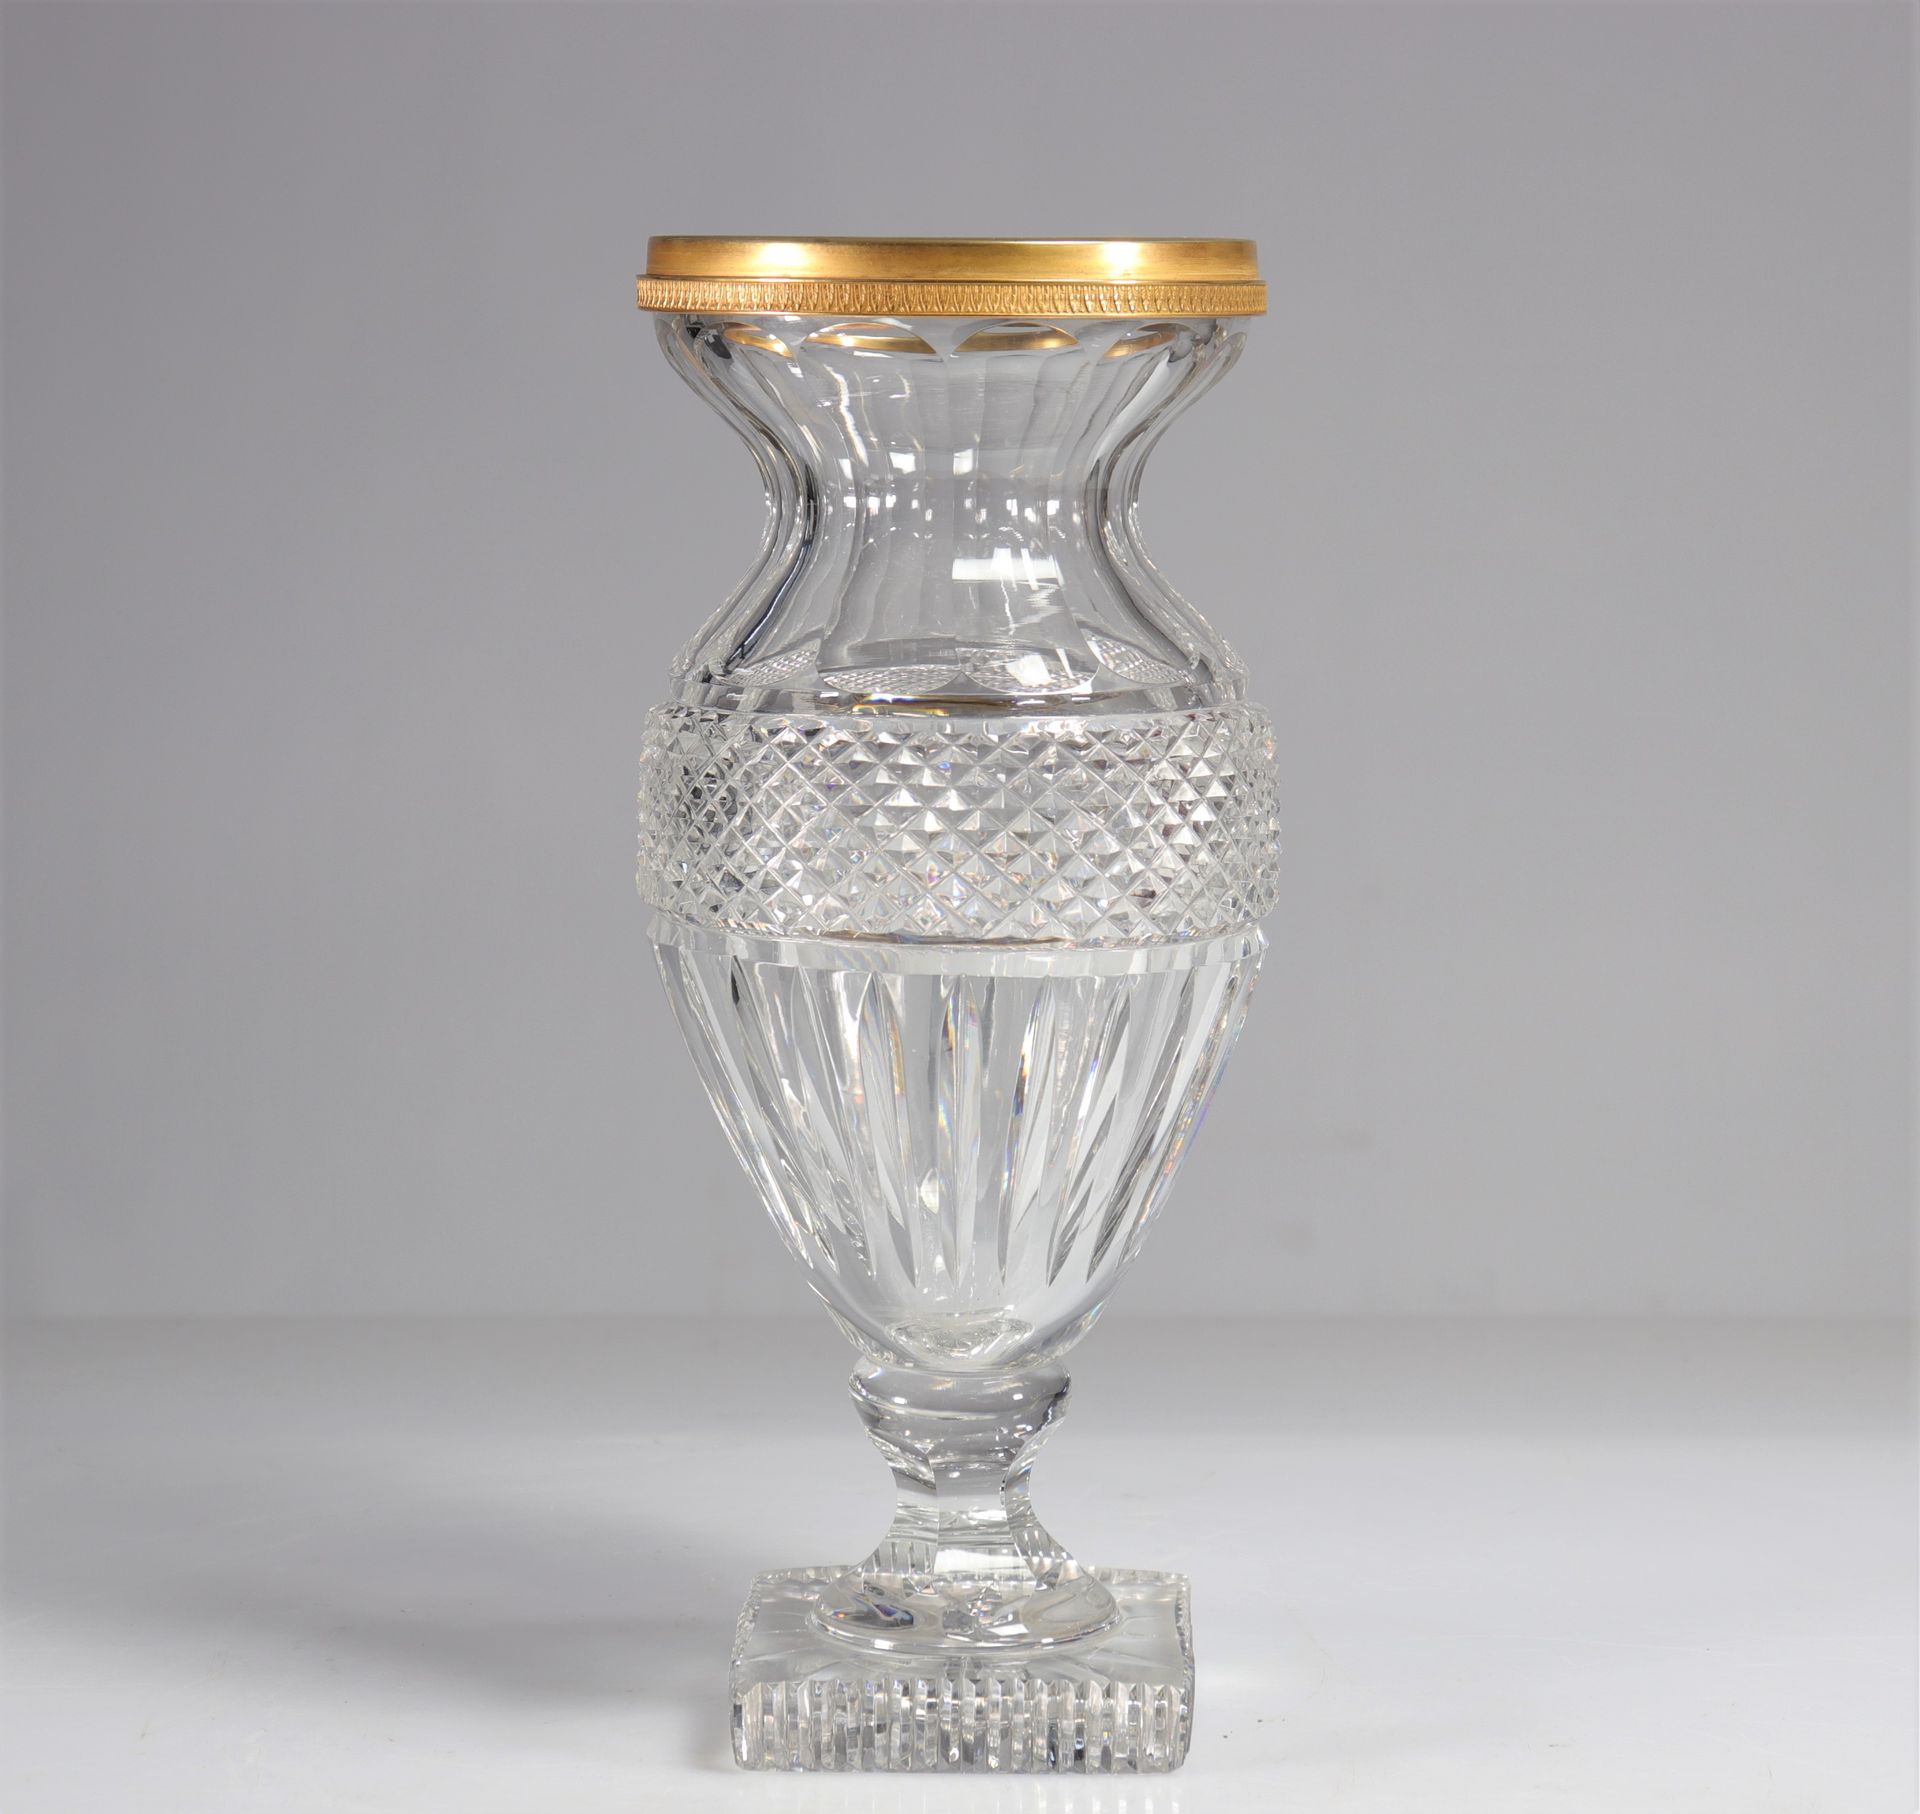 Null 巴卡拉帝国风格的水晶花瓶，带有鎏金铜框。
重量：2.92公斤
地区：法国
尺寸：高320MM，长140MM
状态：初见时：状态良好